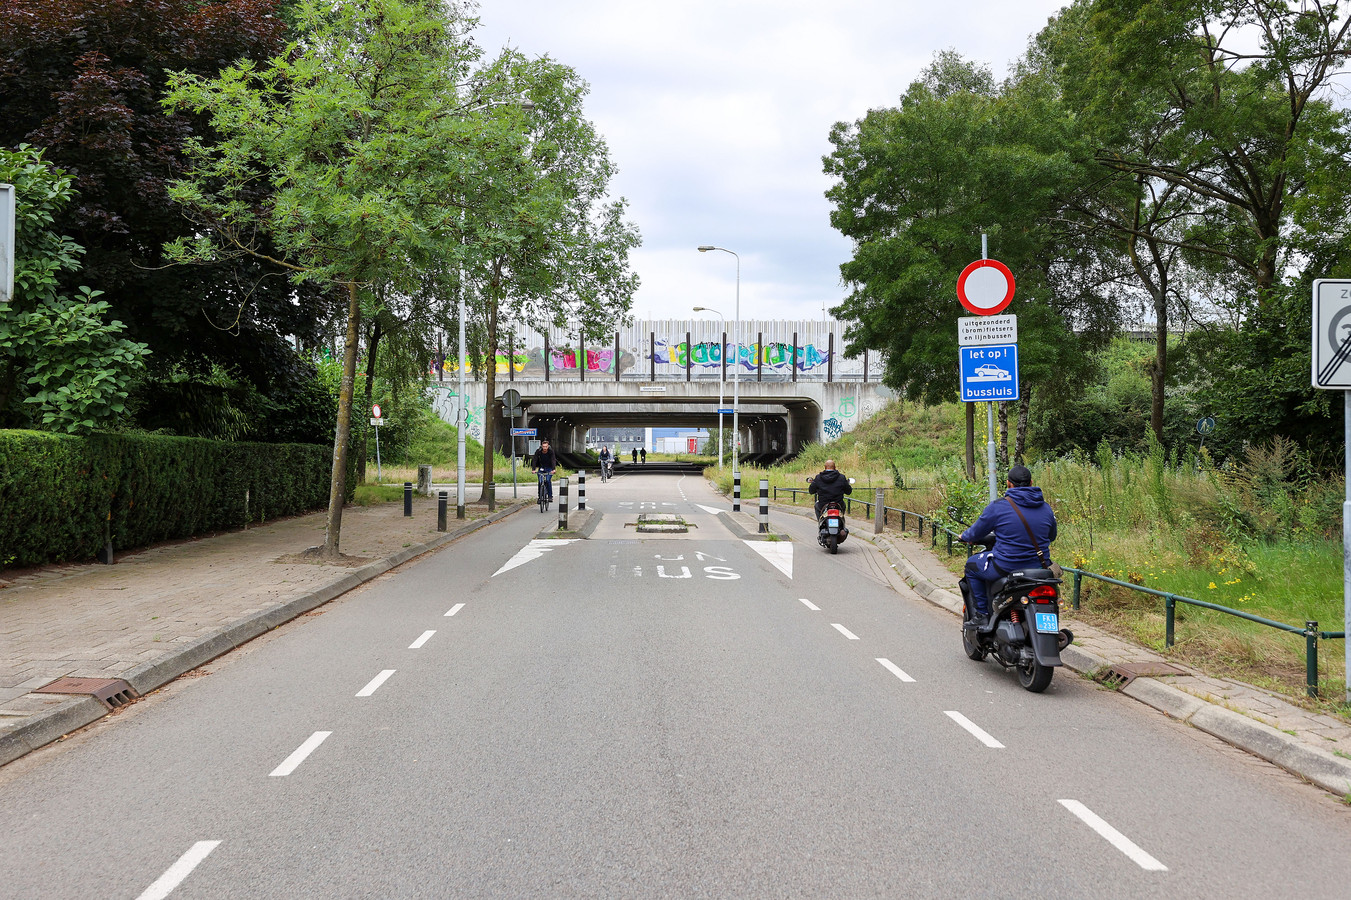 De Ulenpas in de wijk Hanevoet in Eindhoven. Hier komt het snelfietspad tussen High Tech Campus en ASML Veldhoven uit, als het aan de gemeente ligt. De buurt ziet de 'snelfietsweg' liever buitenom aangelegd.Twee van de drie varianten die nog in de race zijn nemen links de Binckhorst.